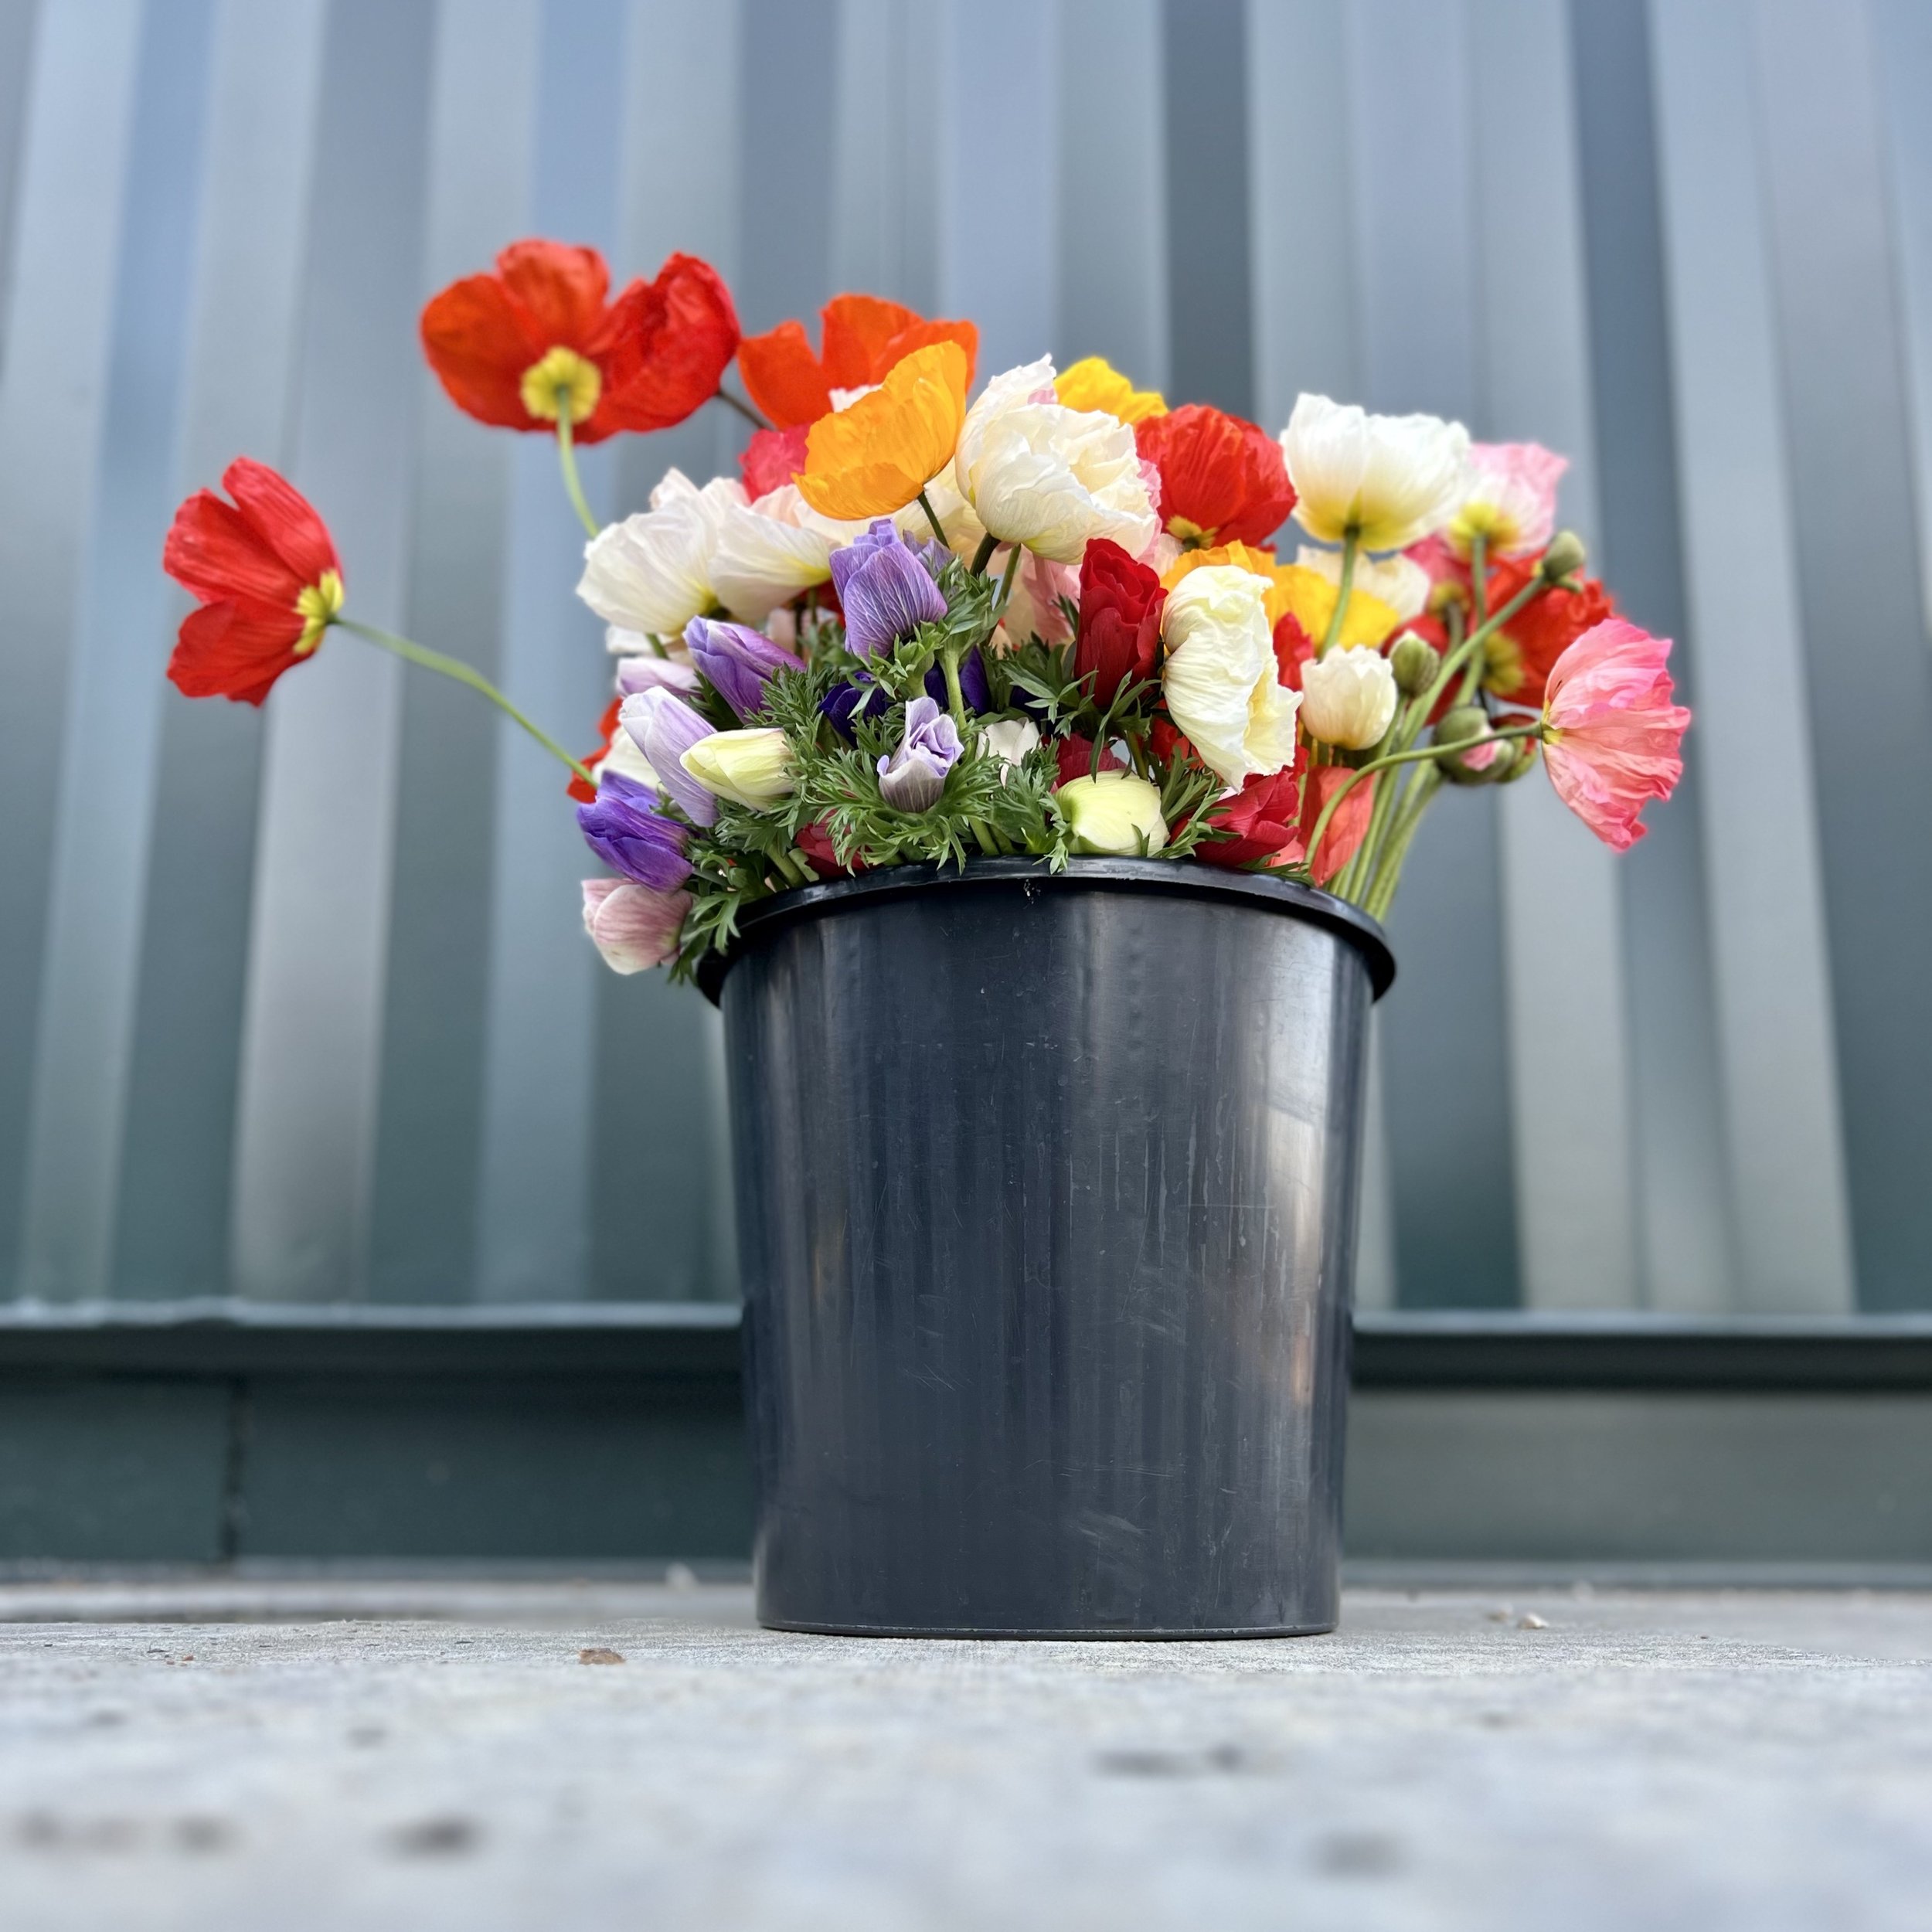 assortedflowers-bucket.jpg